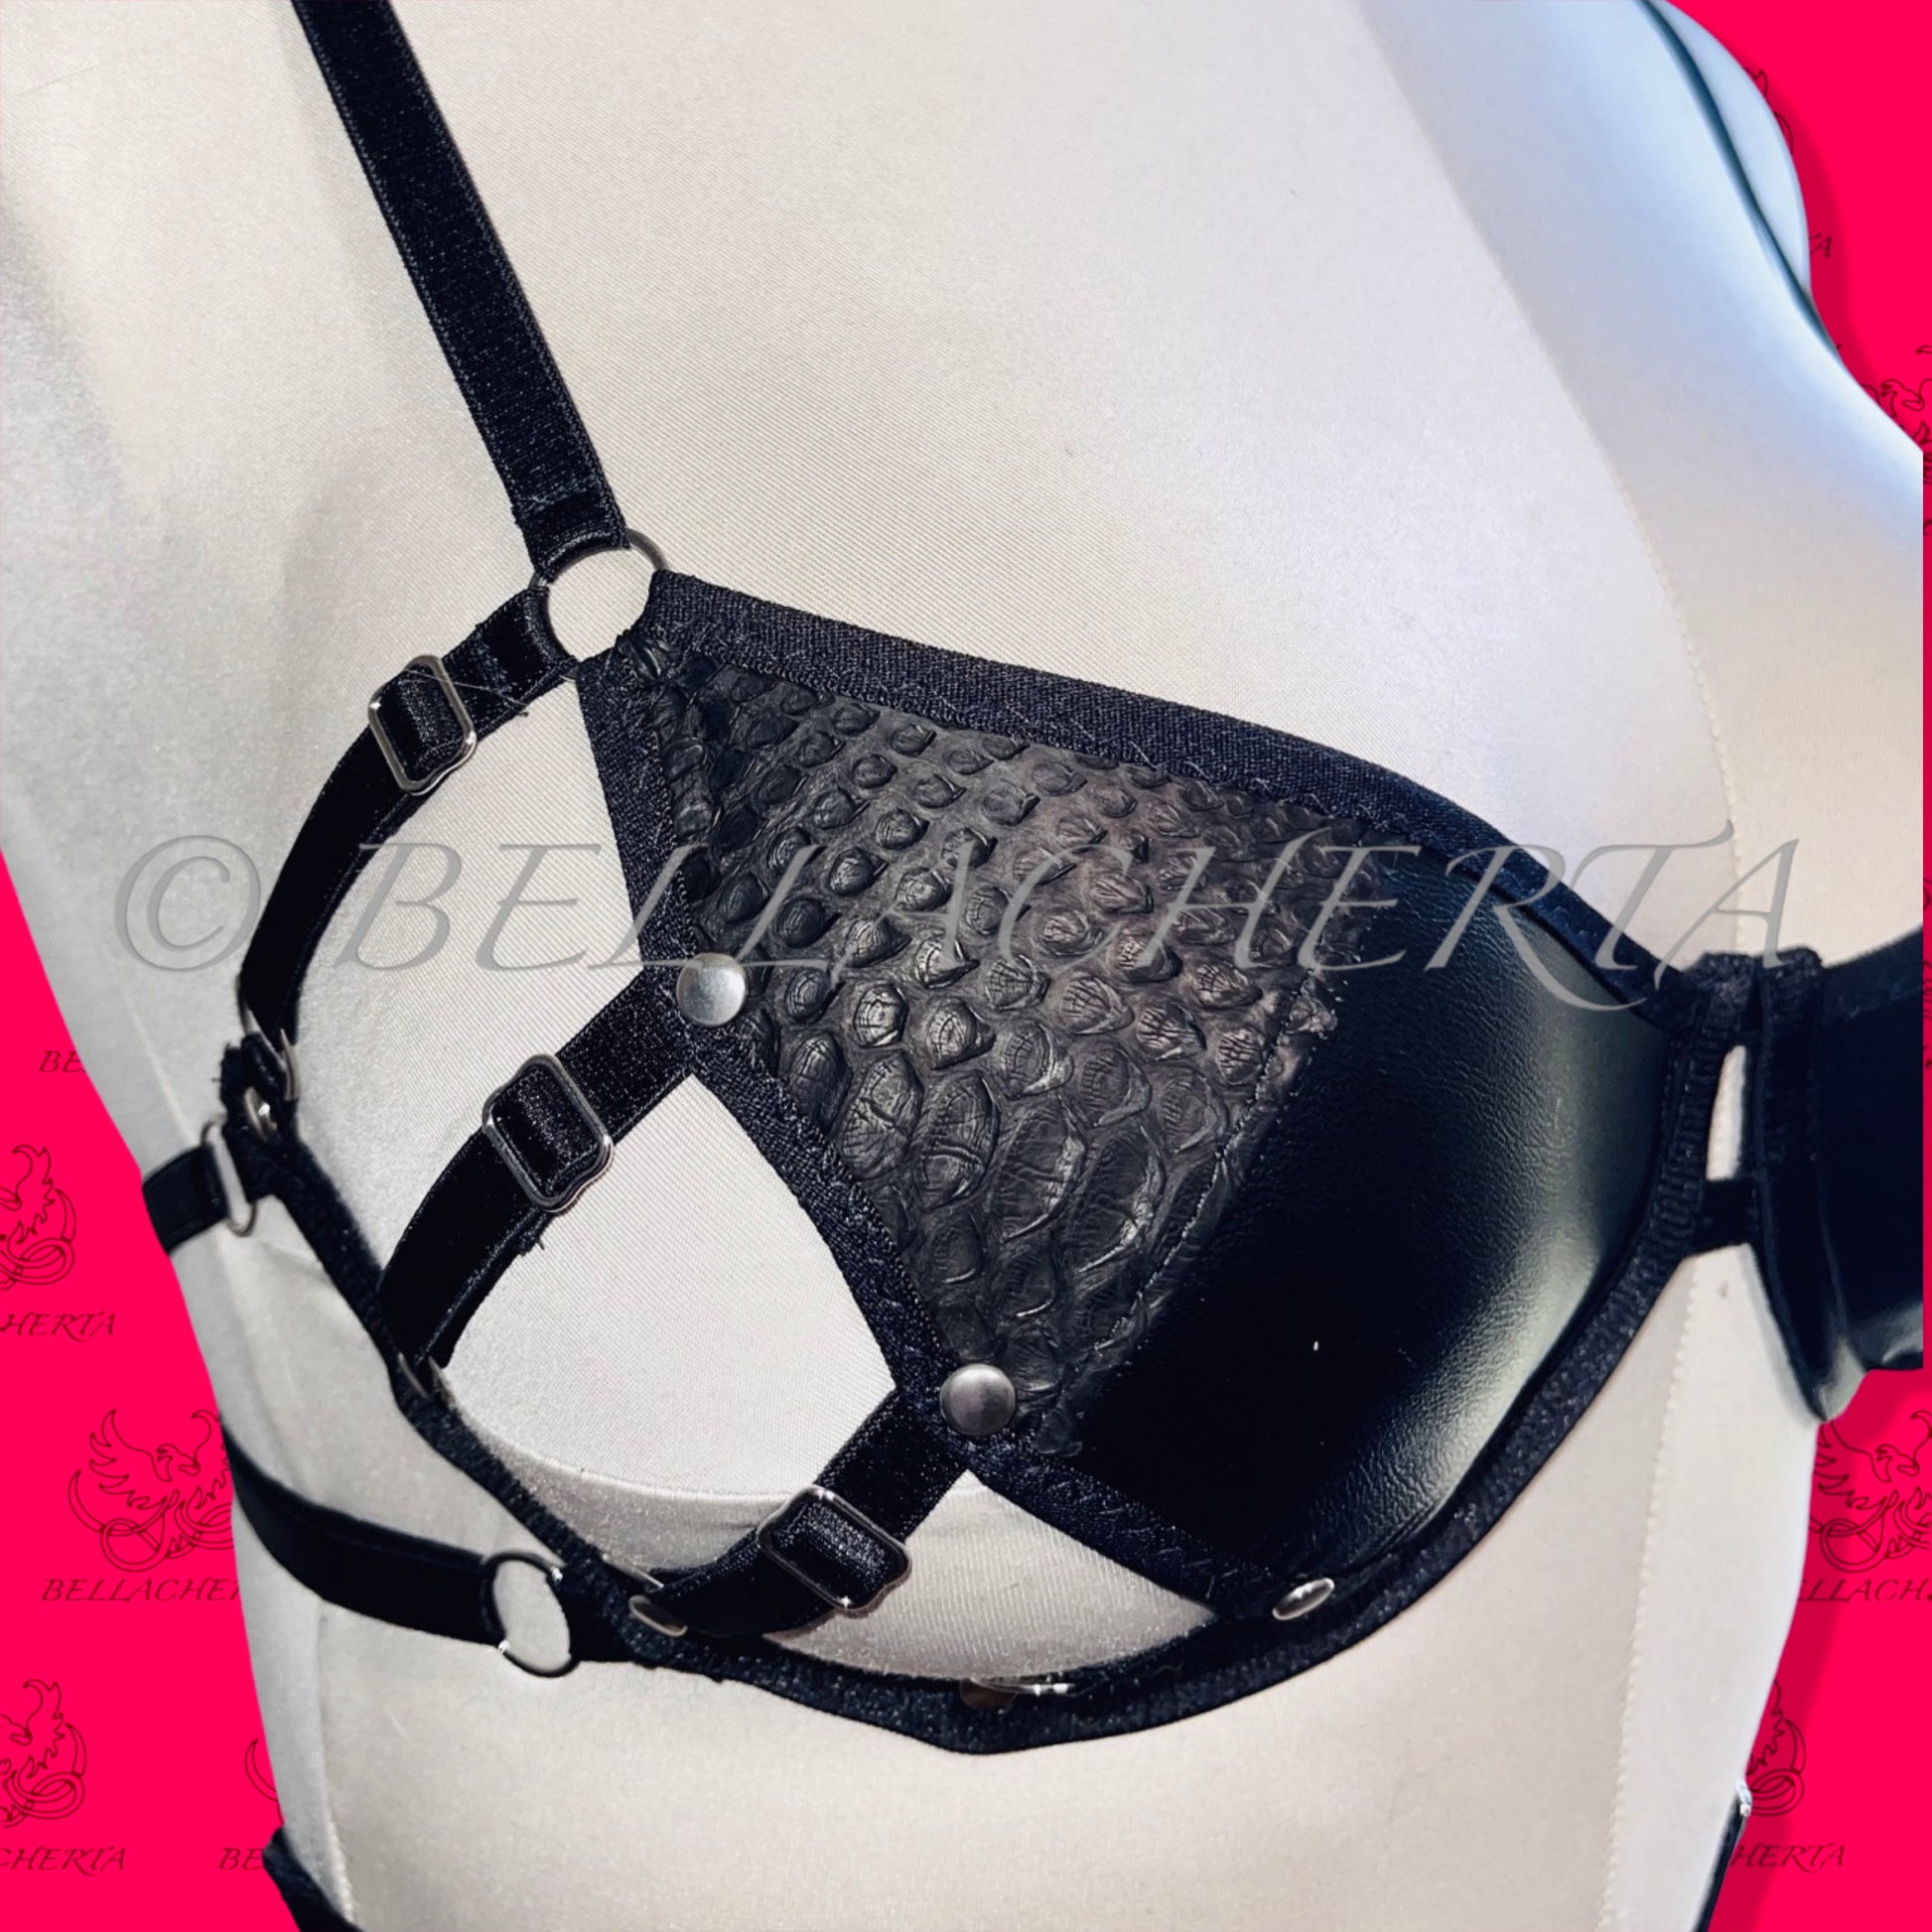 Adjustable Straps Imitation Leather Lingerie Set with Genuine Python Skin Details